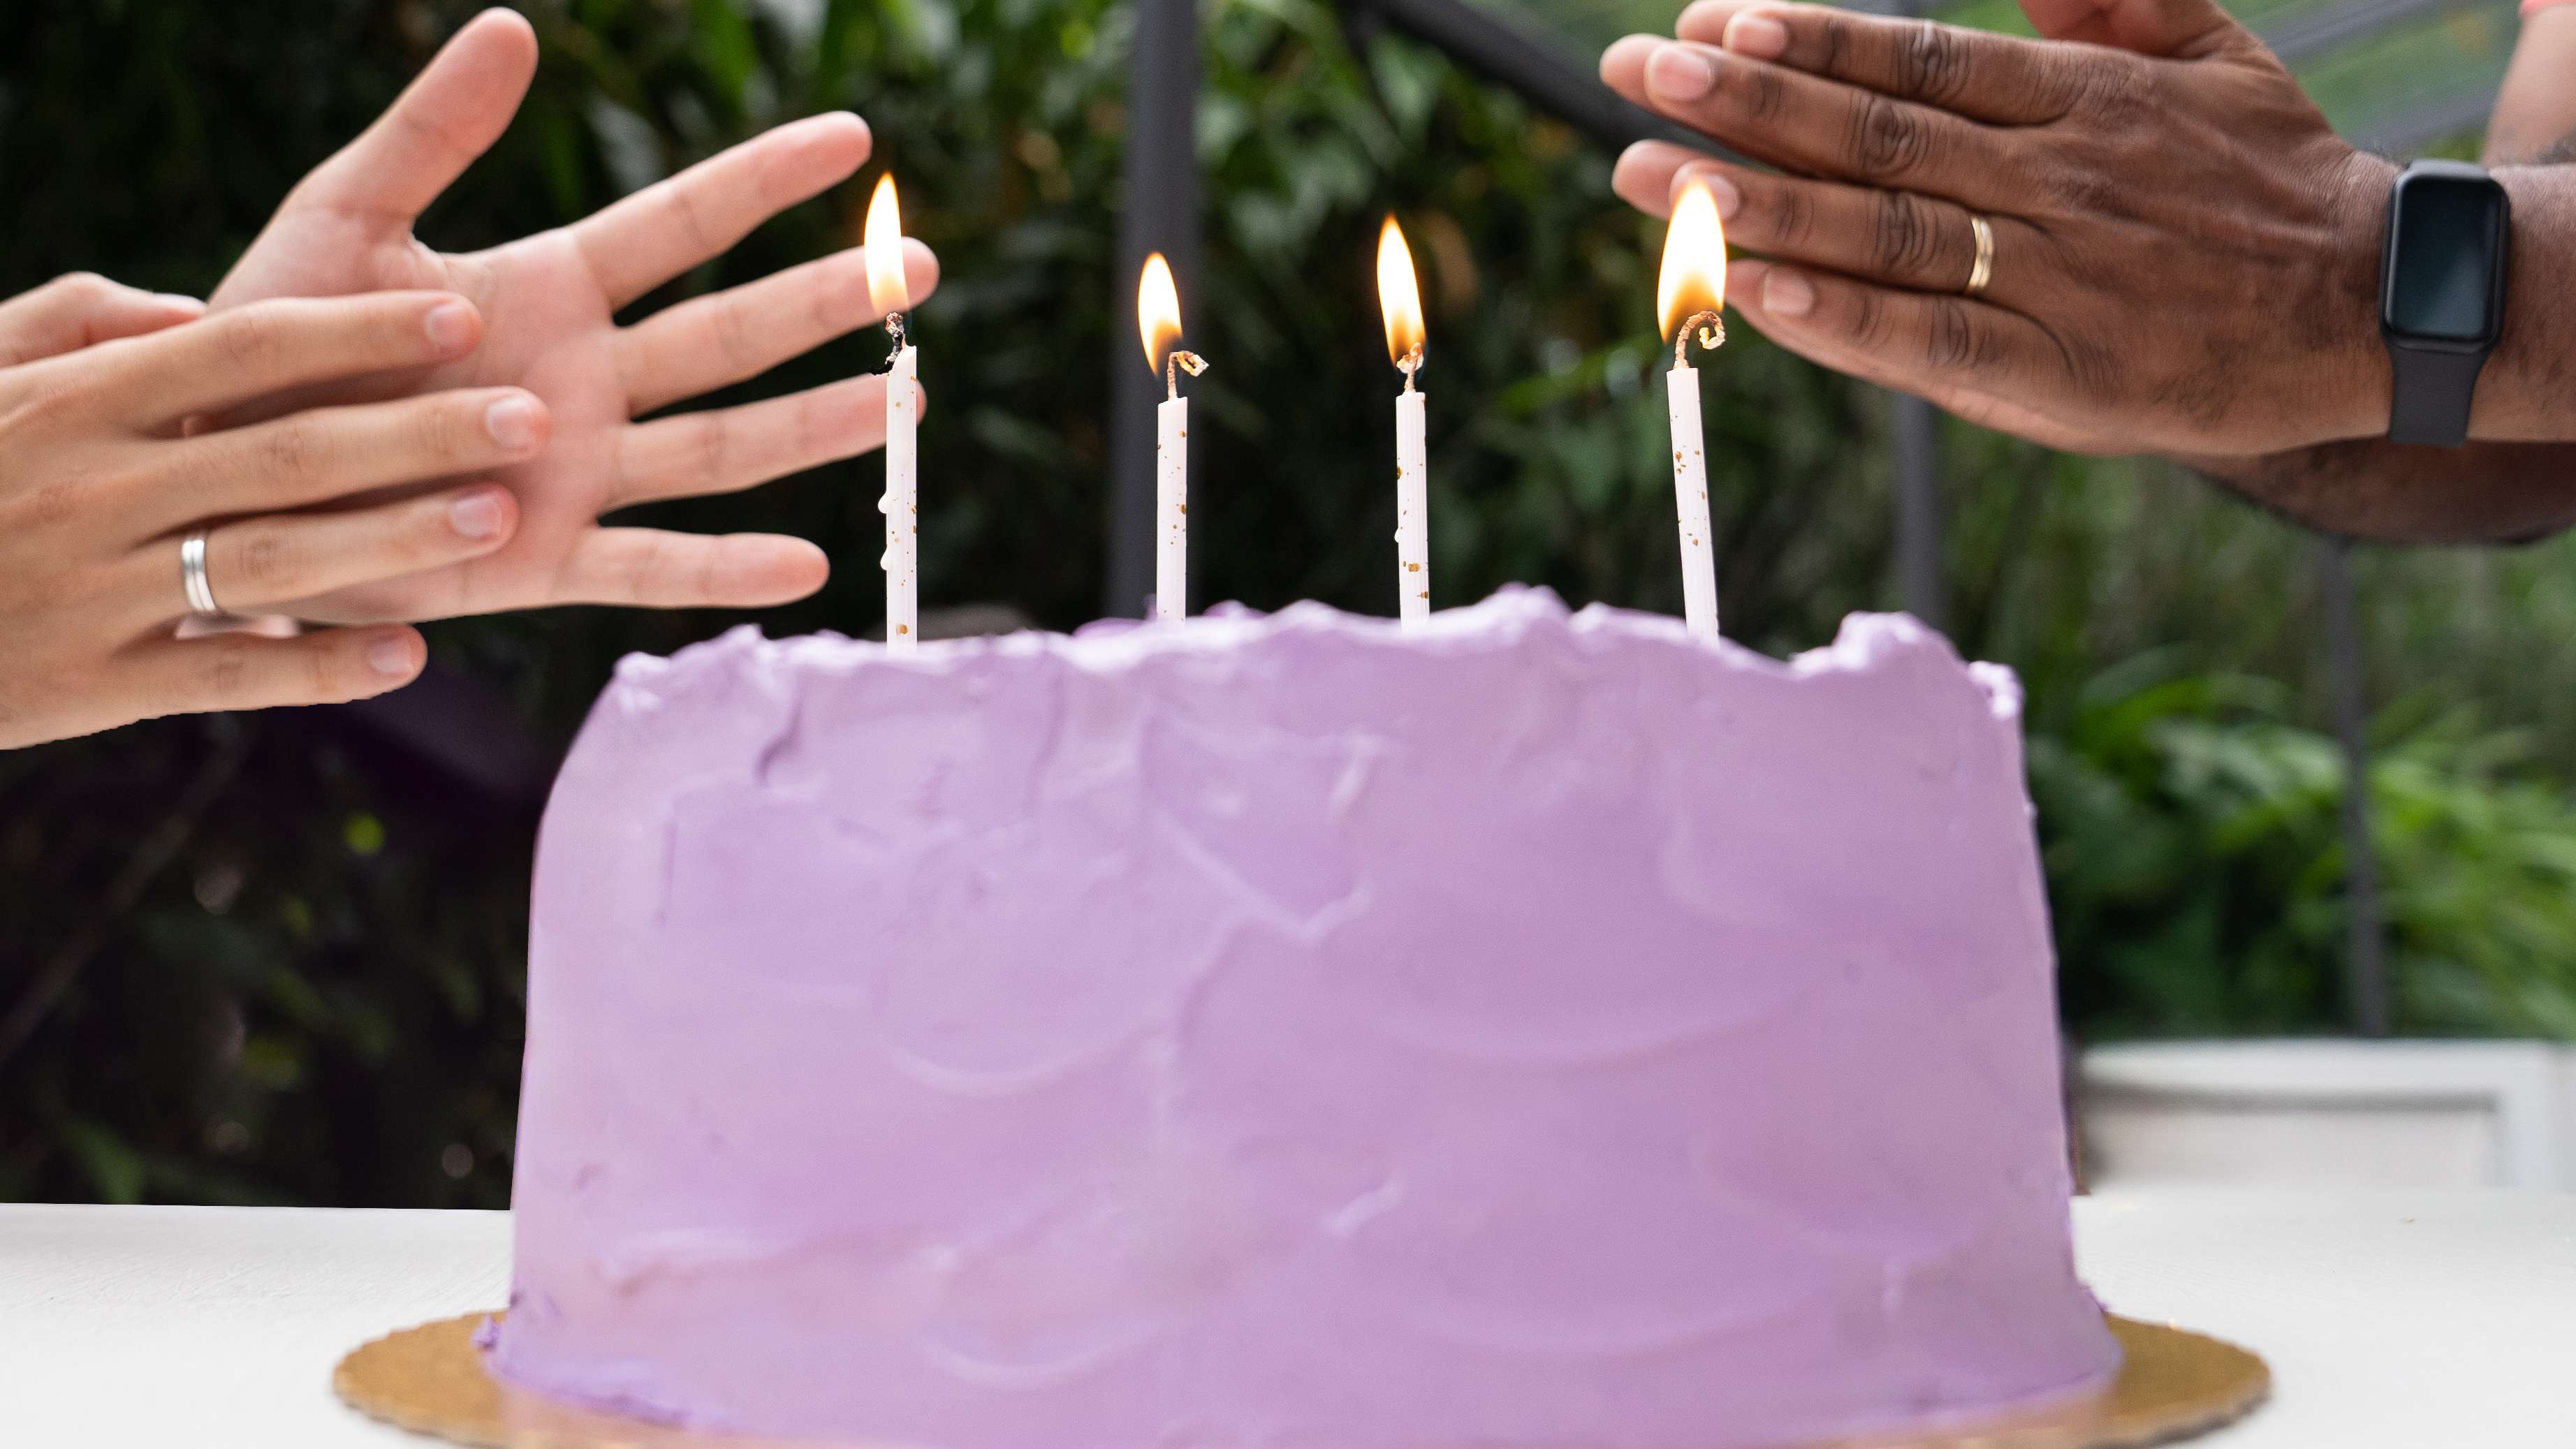 Na imagem aparece um bolo com cobertura roxa e algumas velas com duas mãos, à esquerda e à direita, batendo palmas